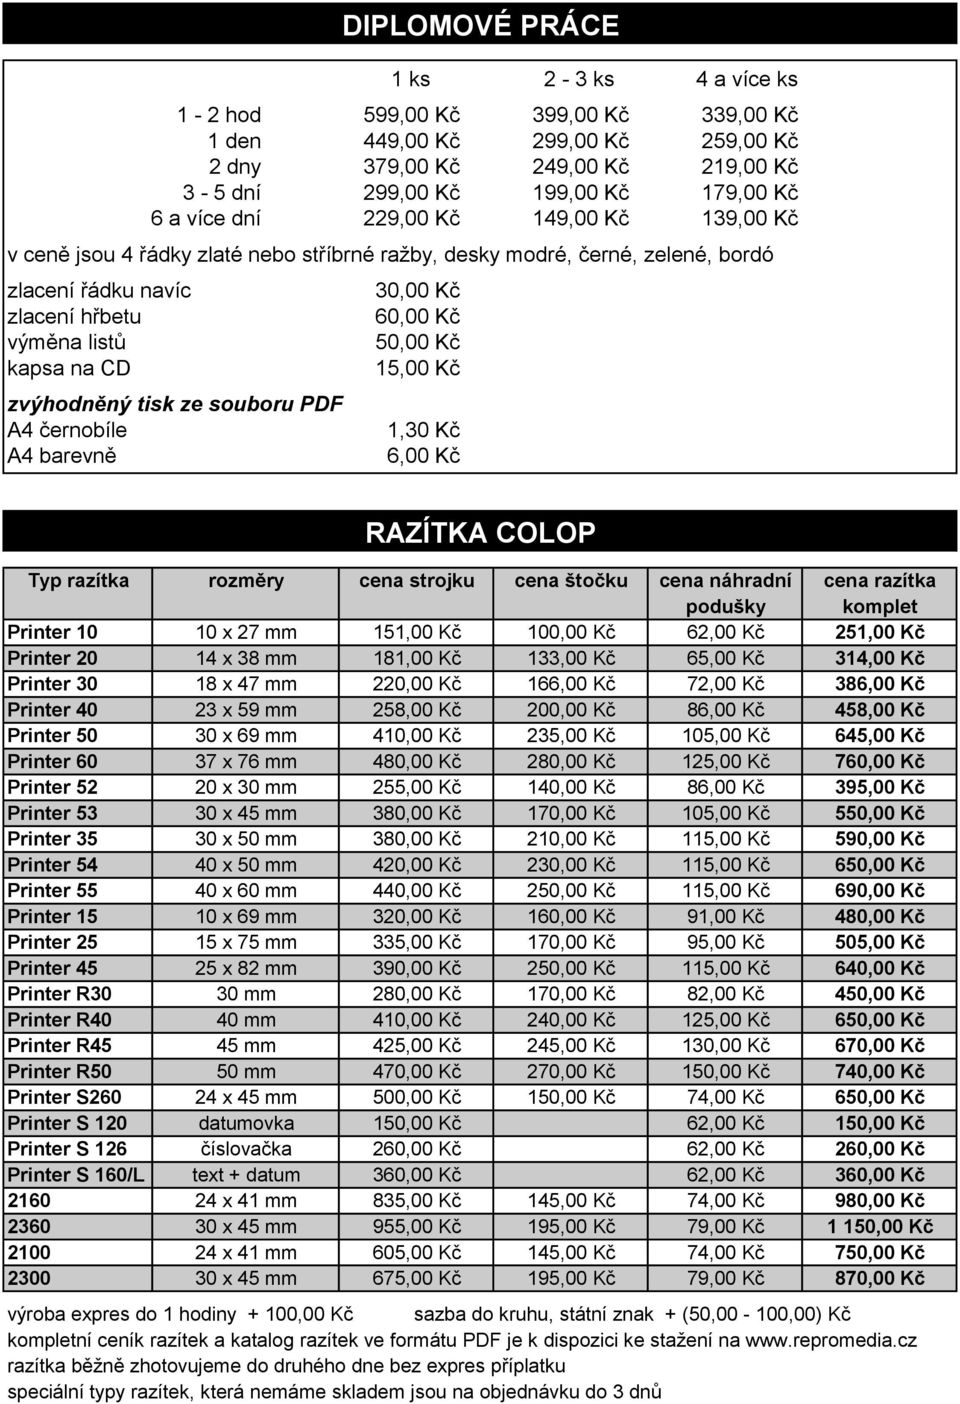 černobíle A4 barevně DIPLOMOVÉ PRÁCE 30,00 Kč 60,00 Kč 50,00 Kč 15,00 Kč 1,30 Kč 6,00 Kč RAZÍTKA COLOP Typ razítka rozměry cena strojku cena štočku cena náhradní cena razítka podušky komplet Printer